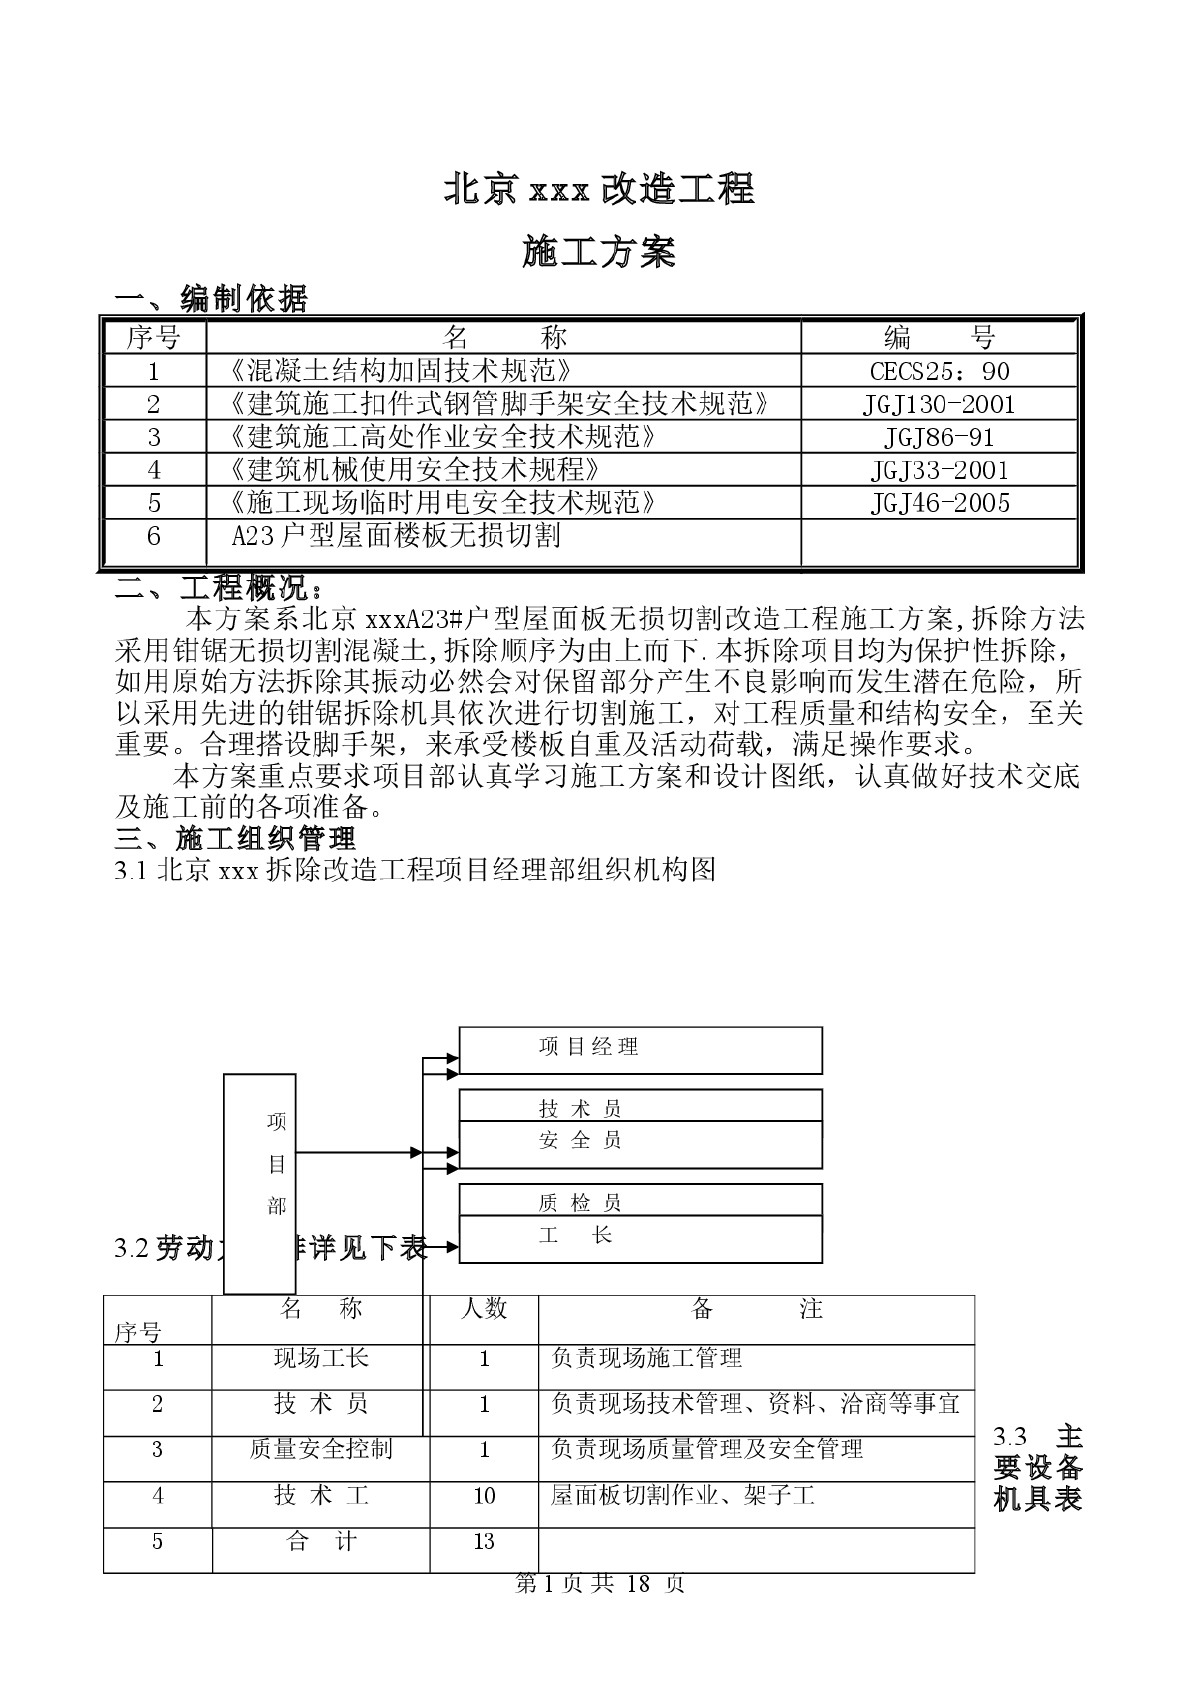 【北京】改造工程屋面板A23户型切割施工方案